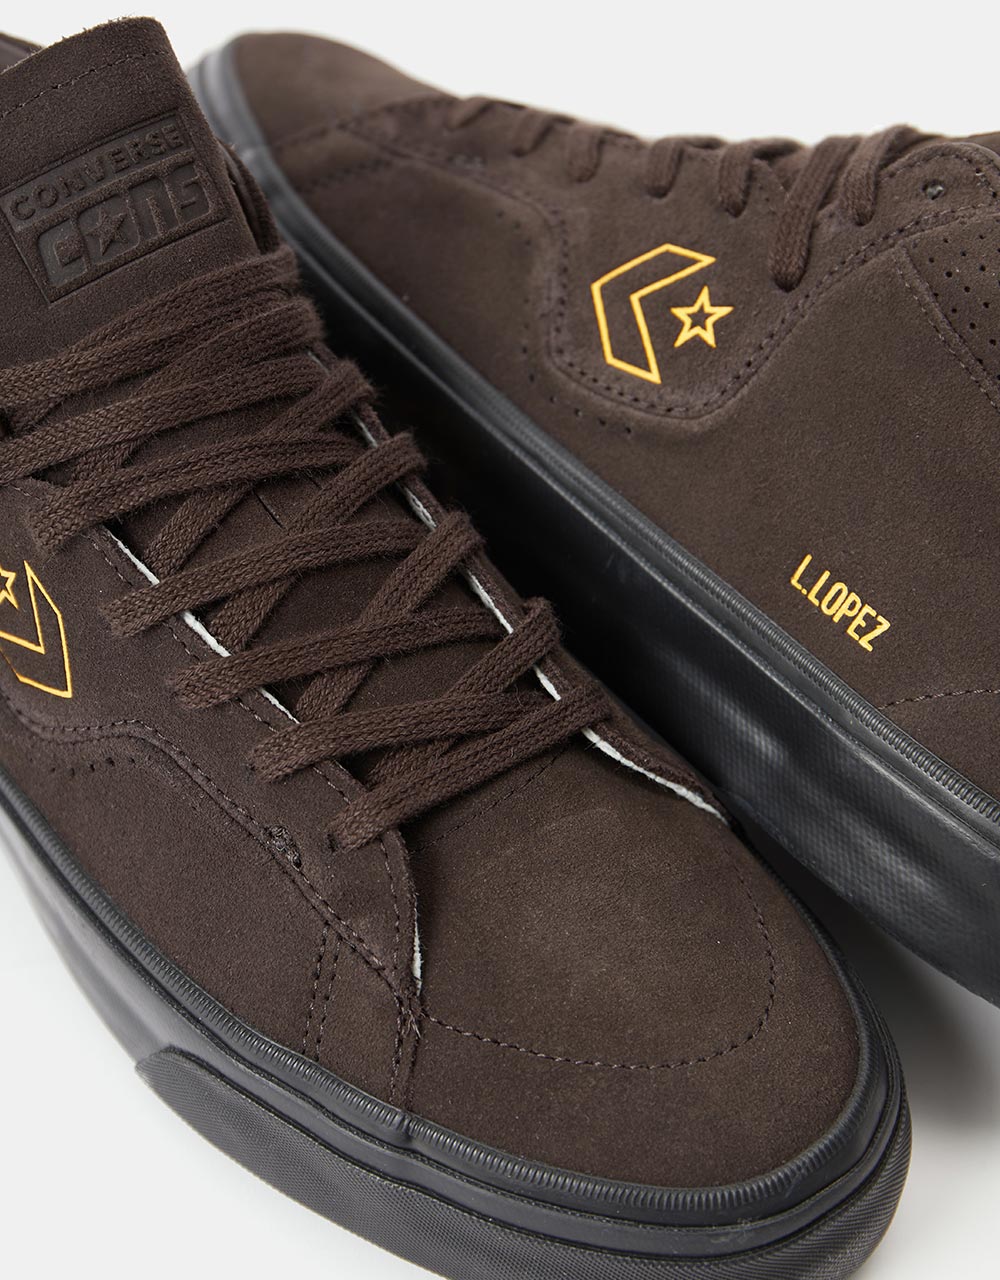 Converse Cons Louie Lopez Pro Mid Skate Shoes - Velvet Brown/Amarillo/Black